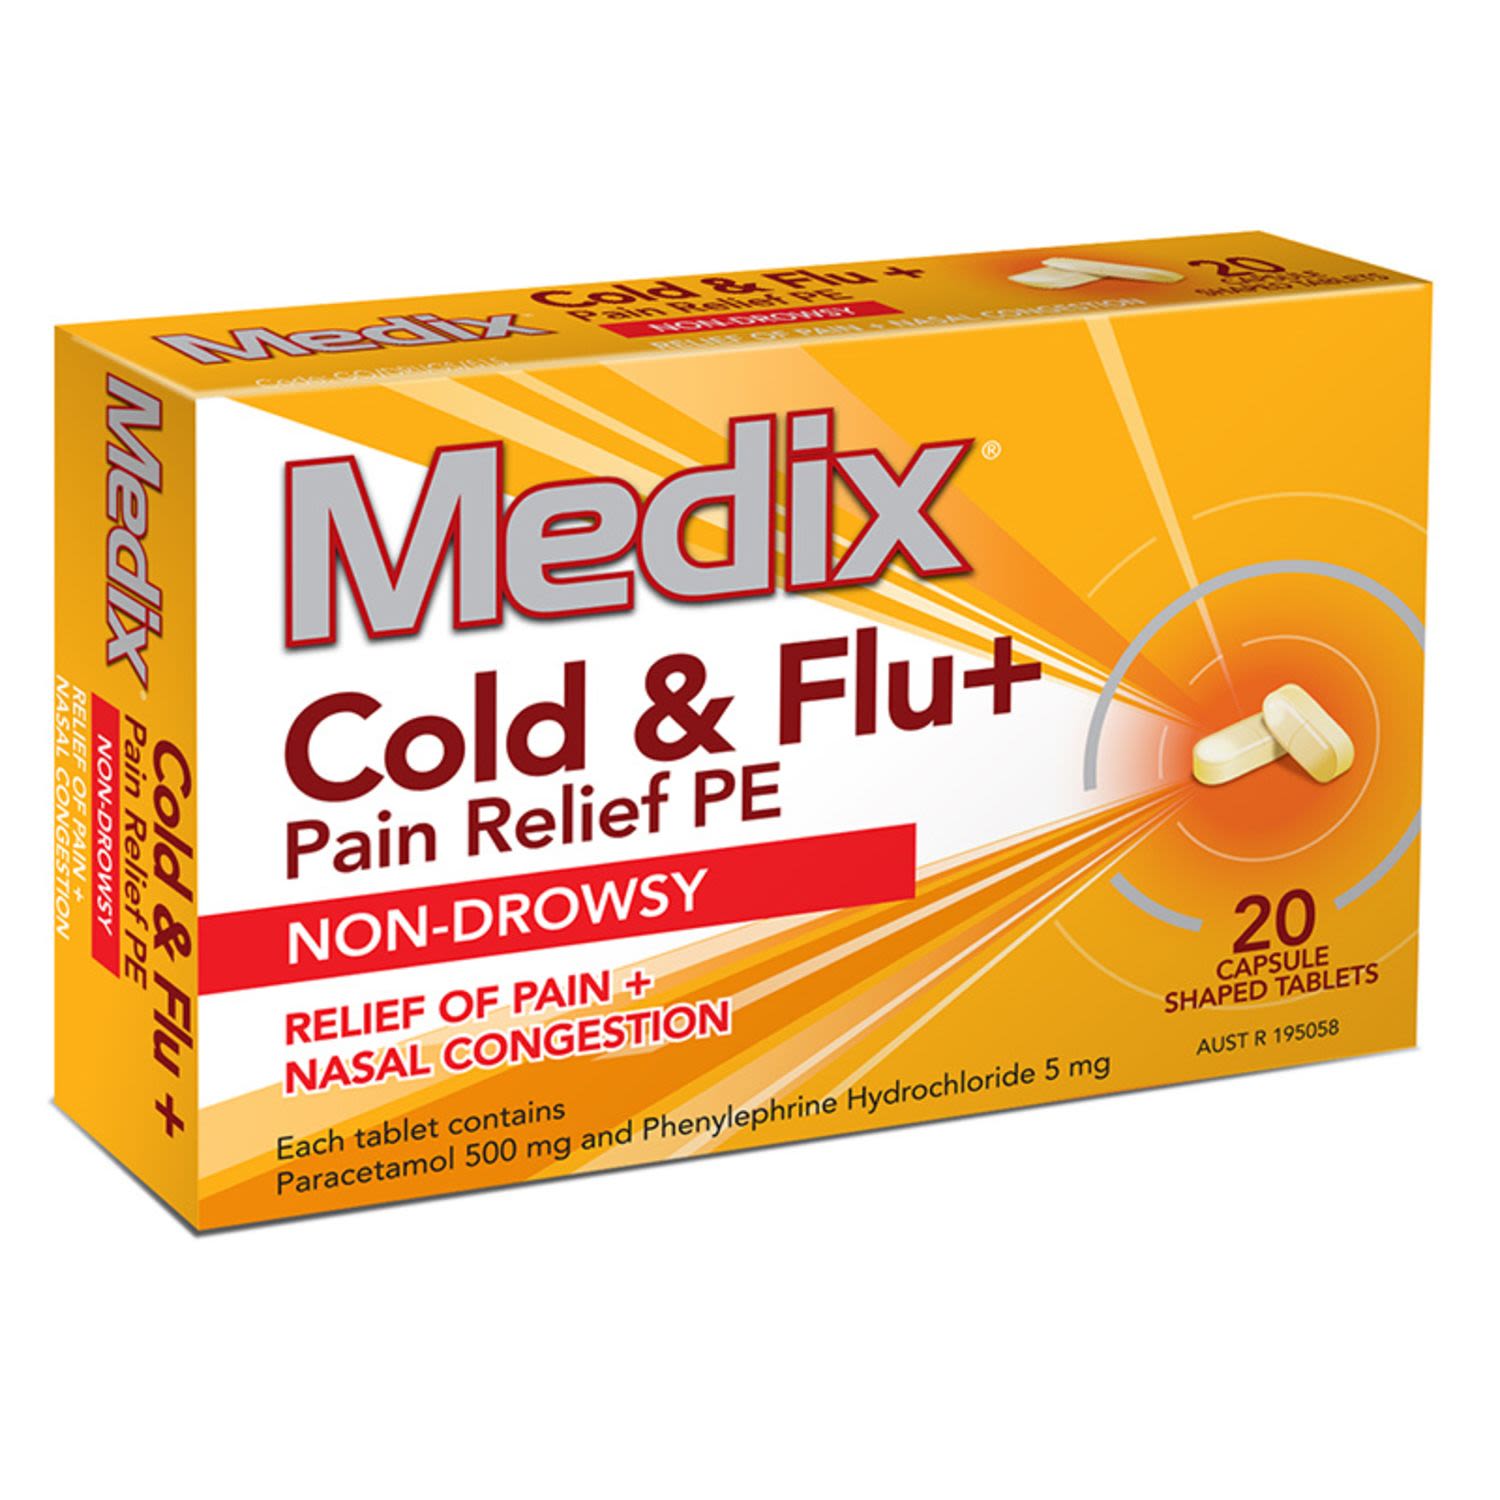 Medix Cold & Flu + Pain Relief PE, 20 Each